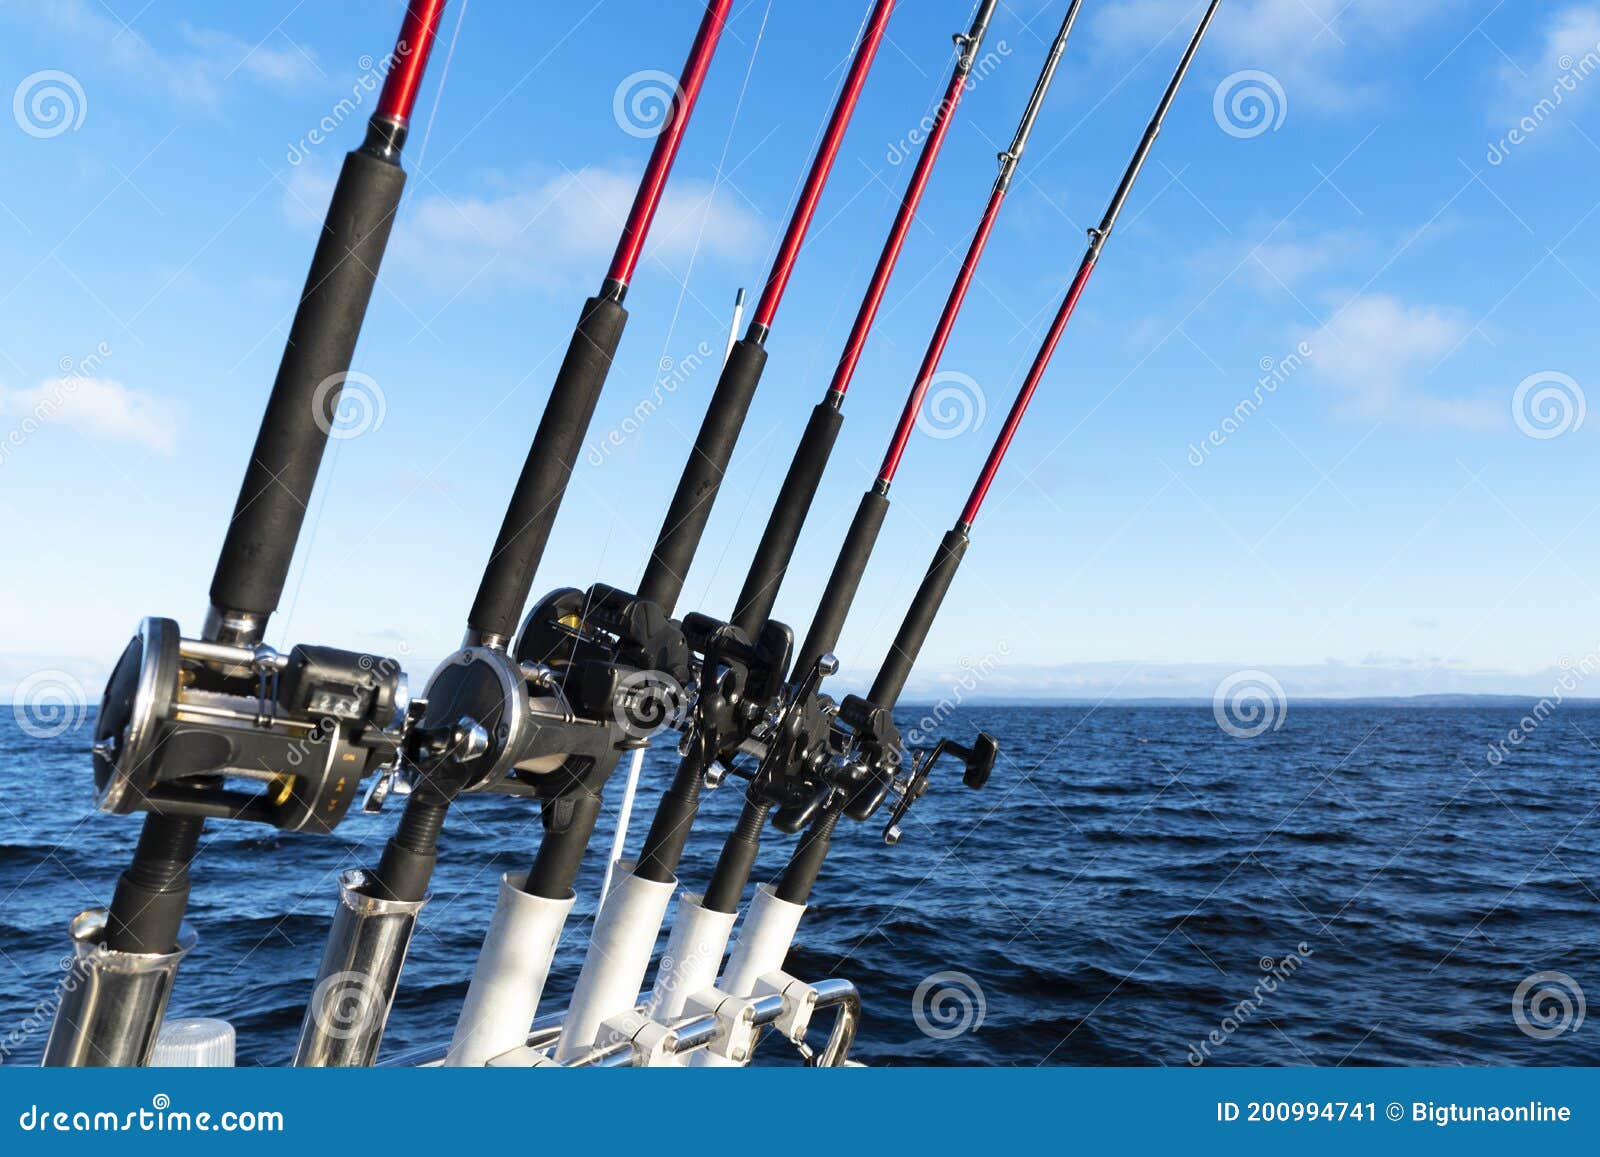 钓竿架. 大型游戏钓鱼. 渔船上的鱼轮和鱼竿图案. 海洋渔竿和鳗鱼库存